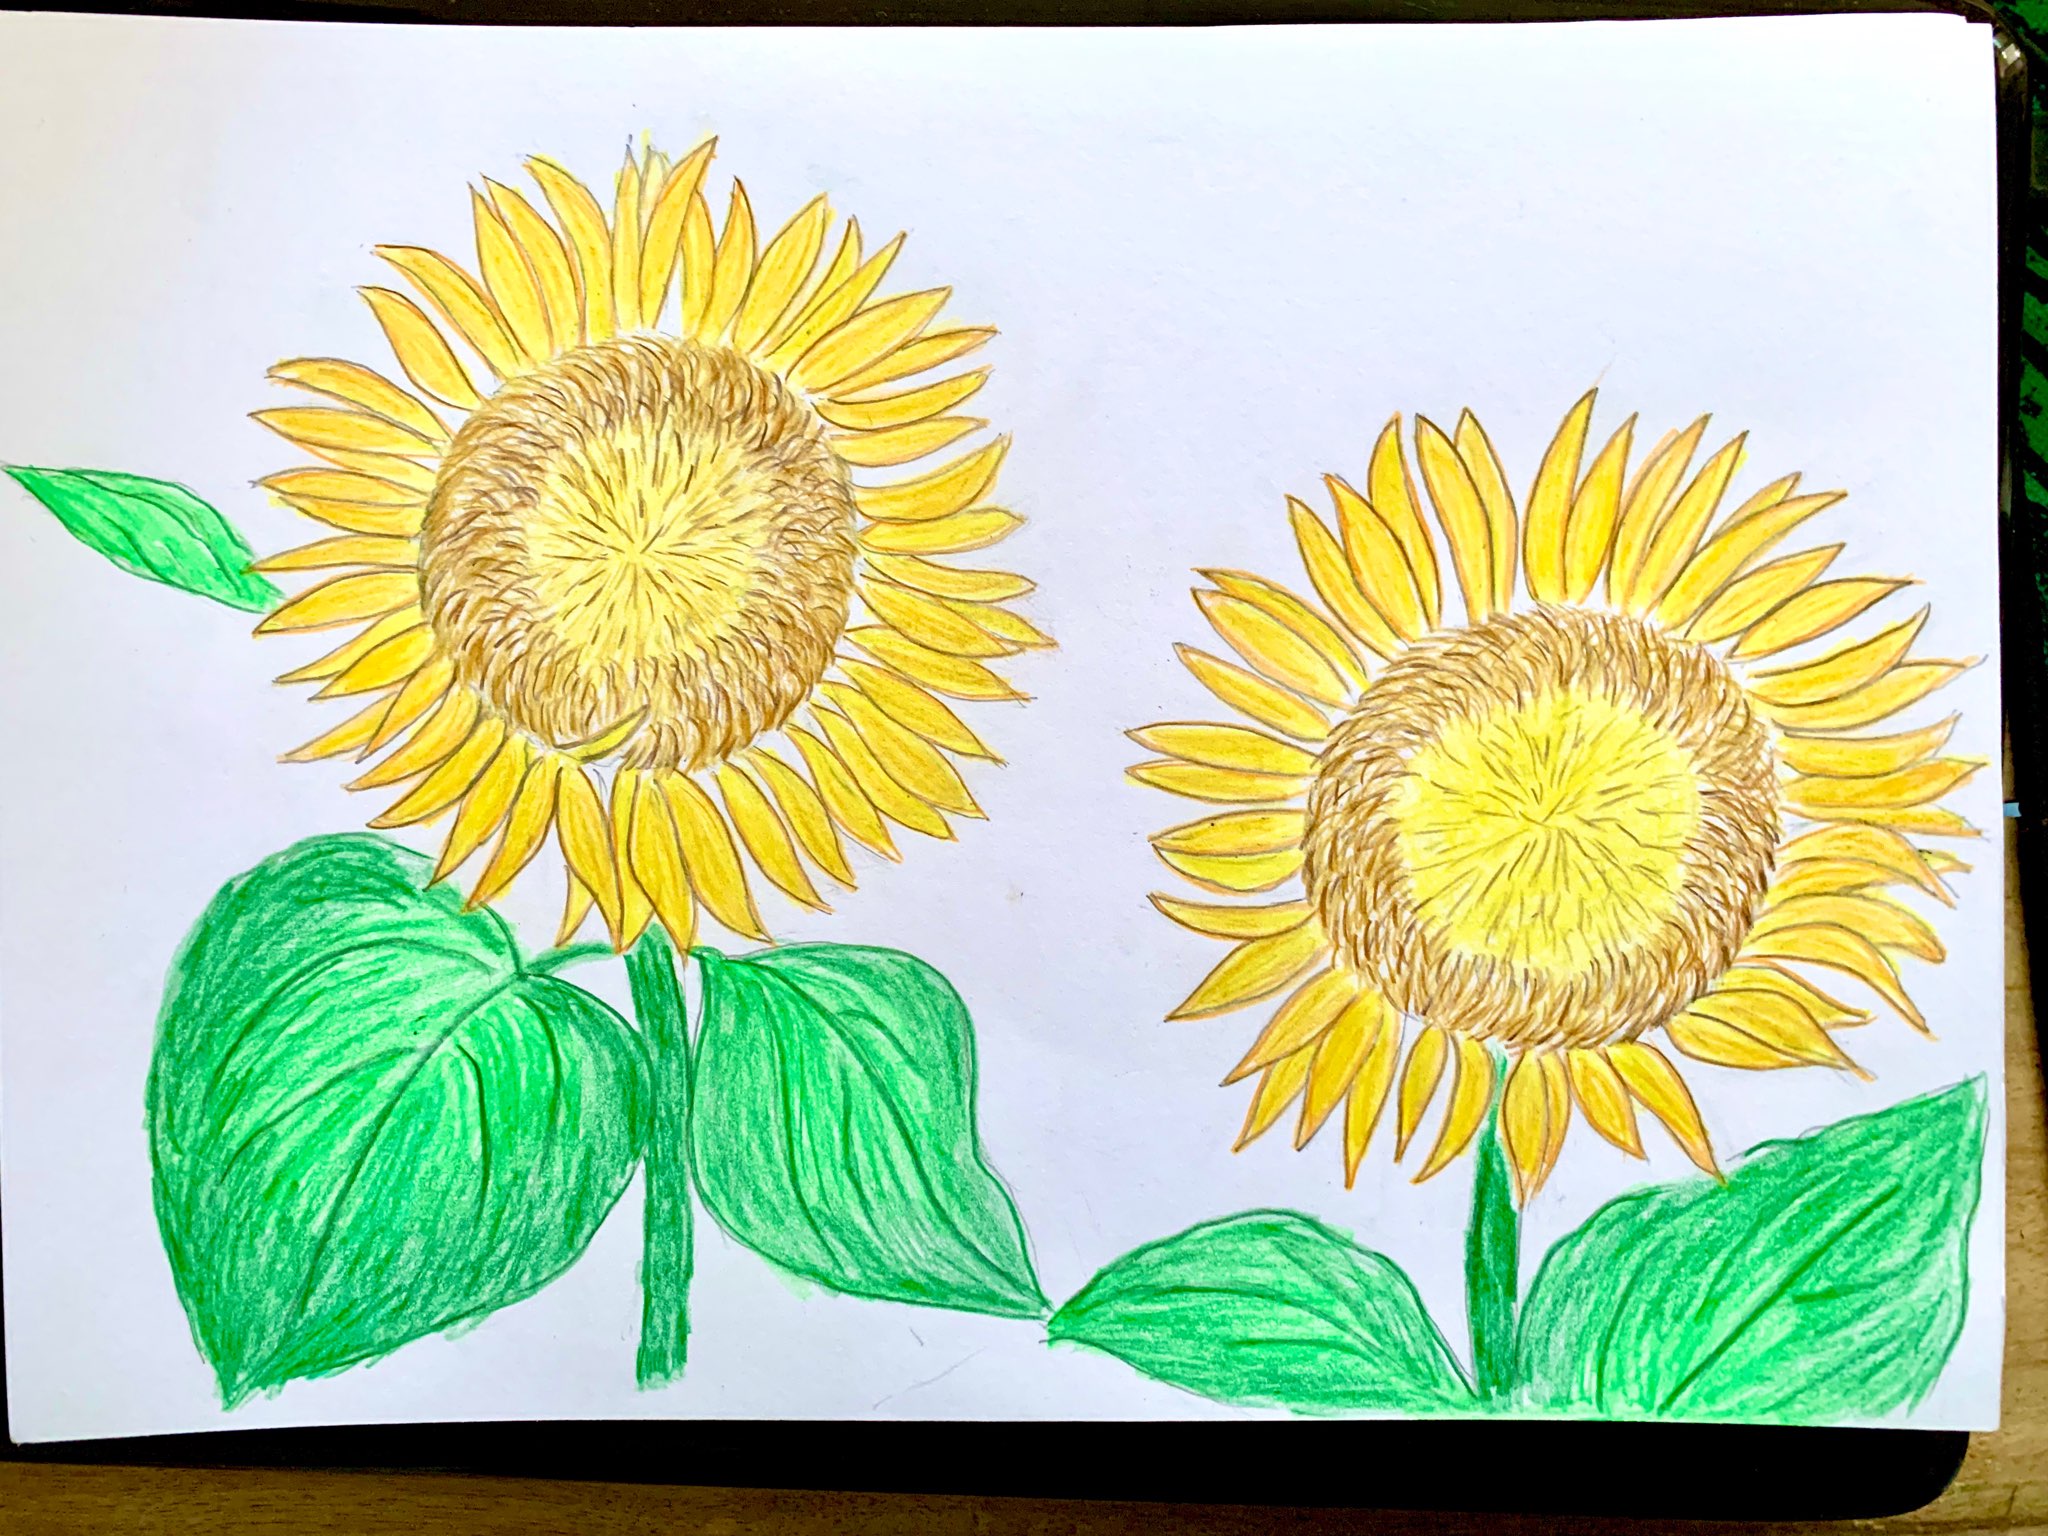 Video hướng dương cách vẽ: Hoa hướng dương nổi tiếng với các bức tranh nhiều màu sắc và tươi sáng. Bạn sẽ cảm thấy hài lòng khi biết rằng vẽ hoa hướng dương lại rất đơn giản. Xem video này để tìm hiểu cách để tạo ra một bức tranh hoa hướng dương mà không cần kinh nghiệm hoặc kỹ năng vẽ.